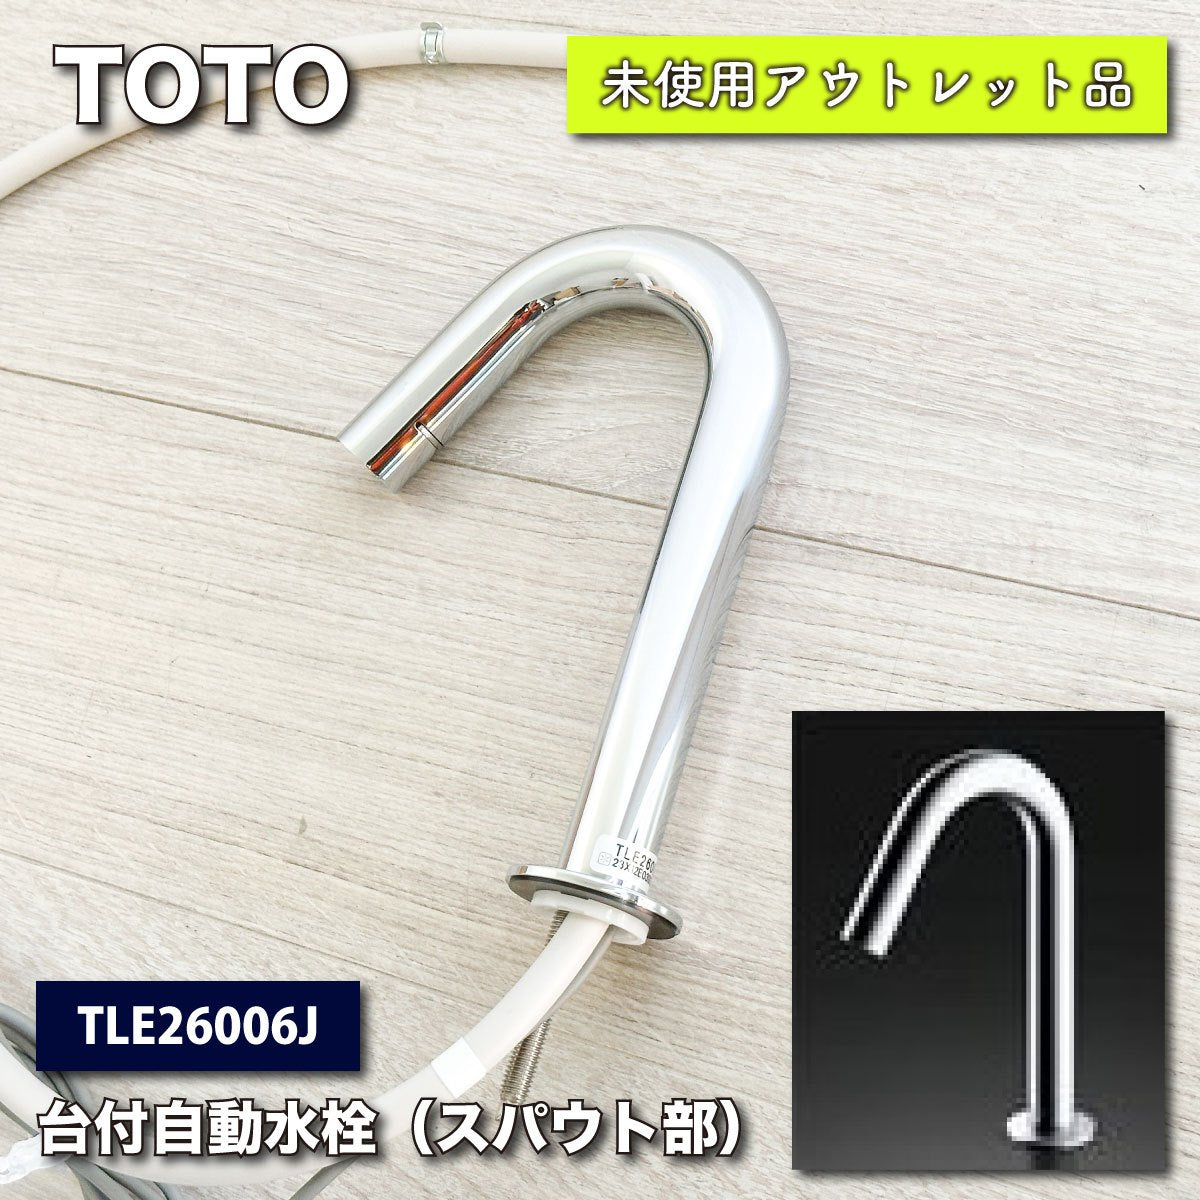 TOTO 自動水栓【TLE26SS2A】(TLE01705J+TLE26006J1セットでの出品です